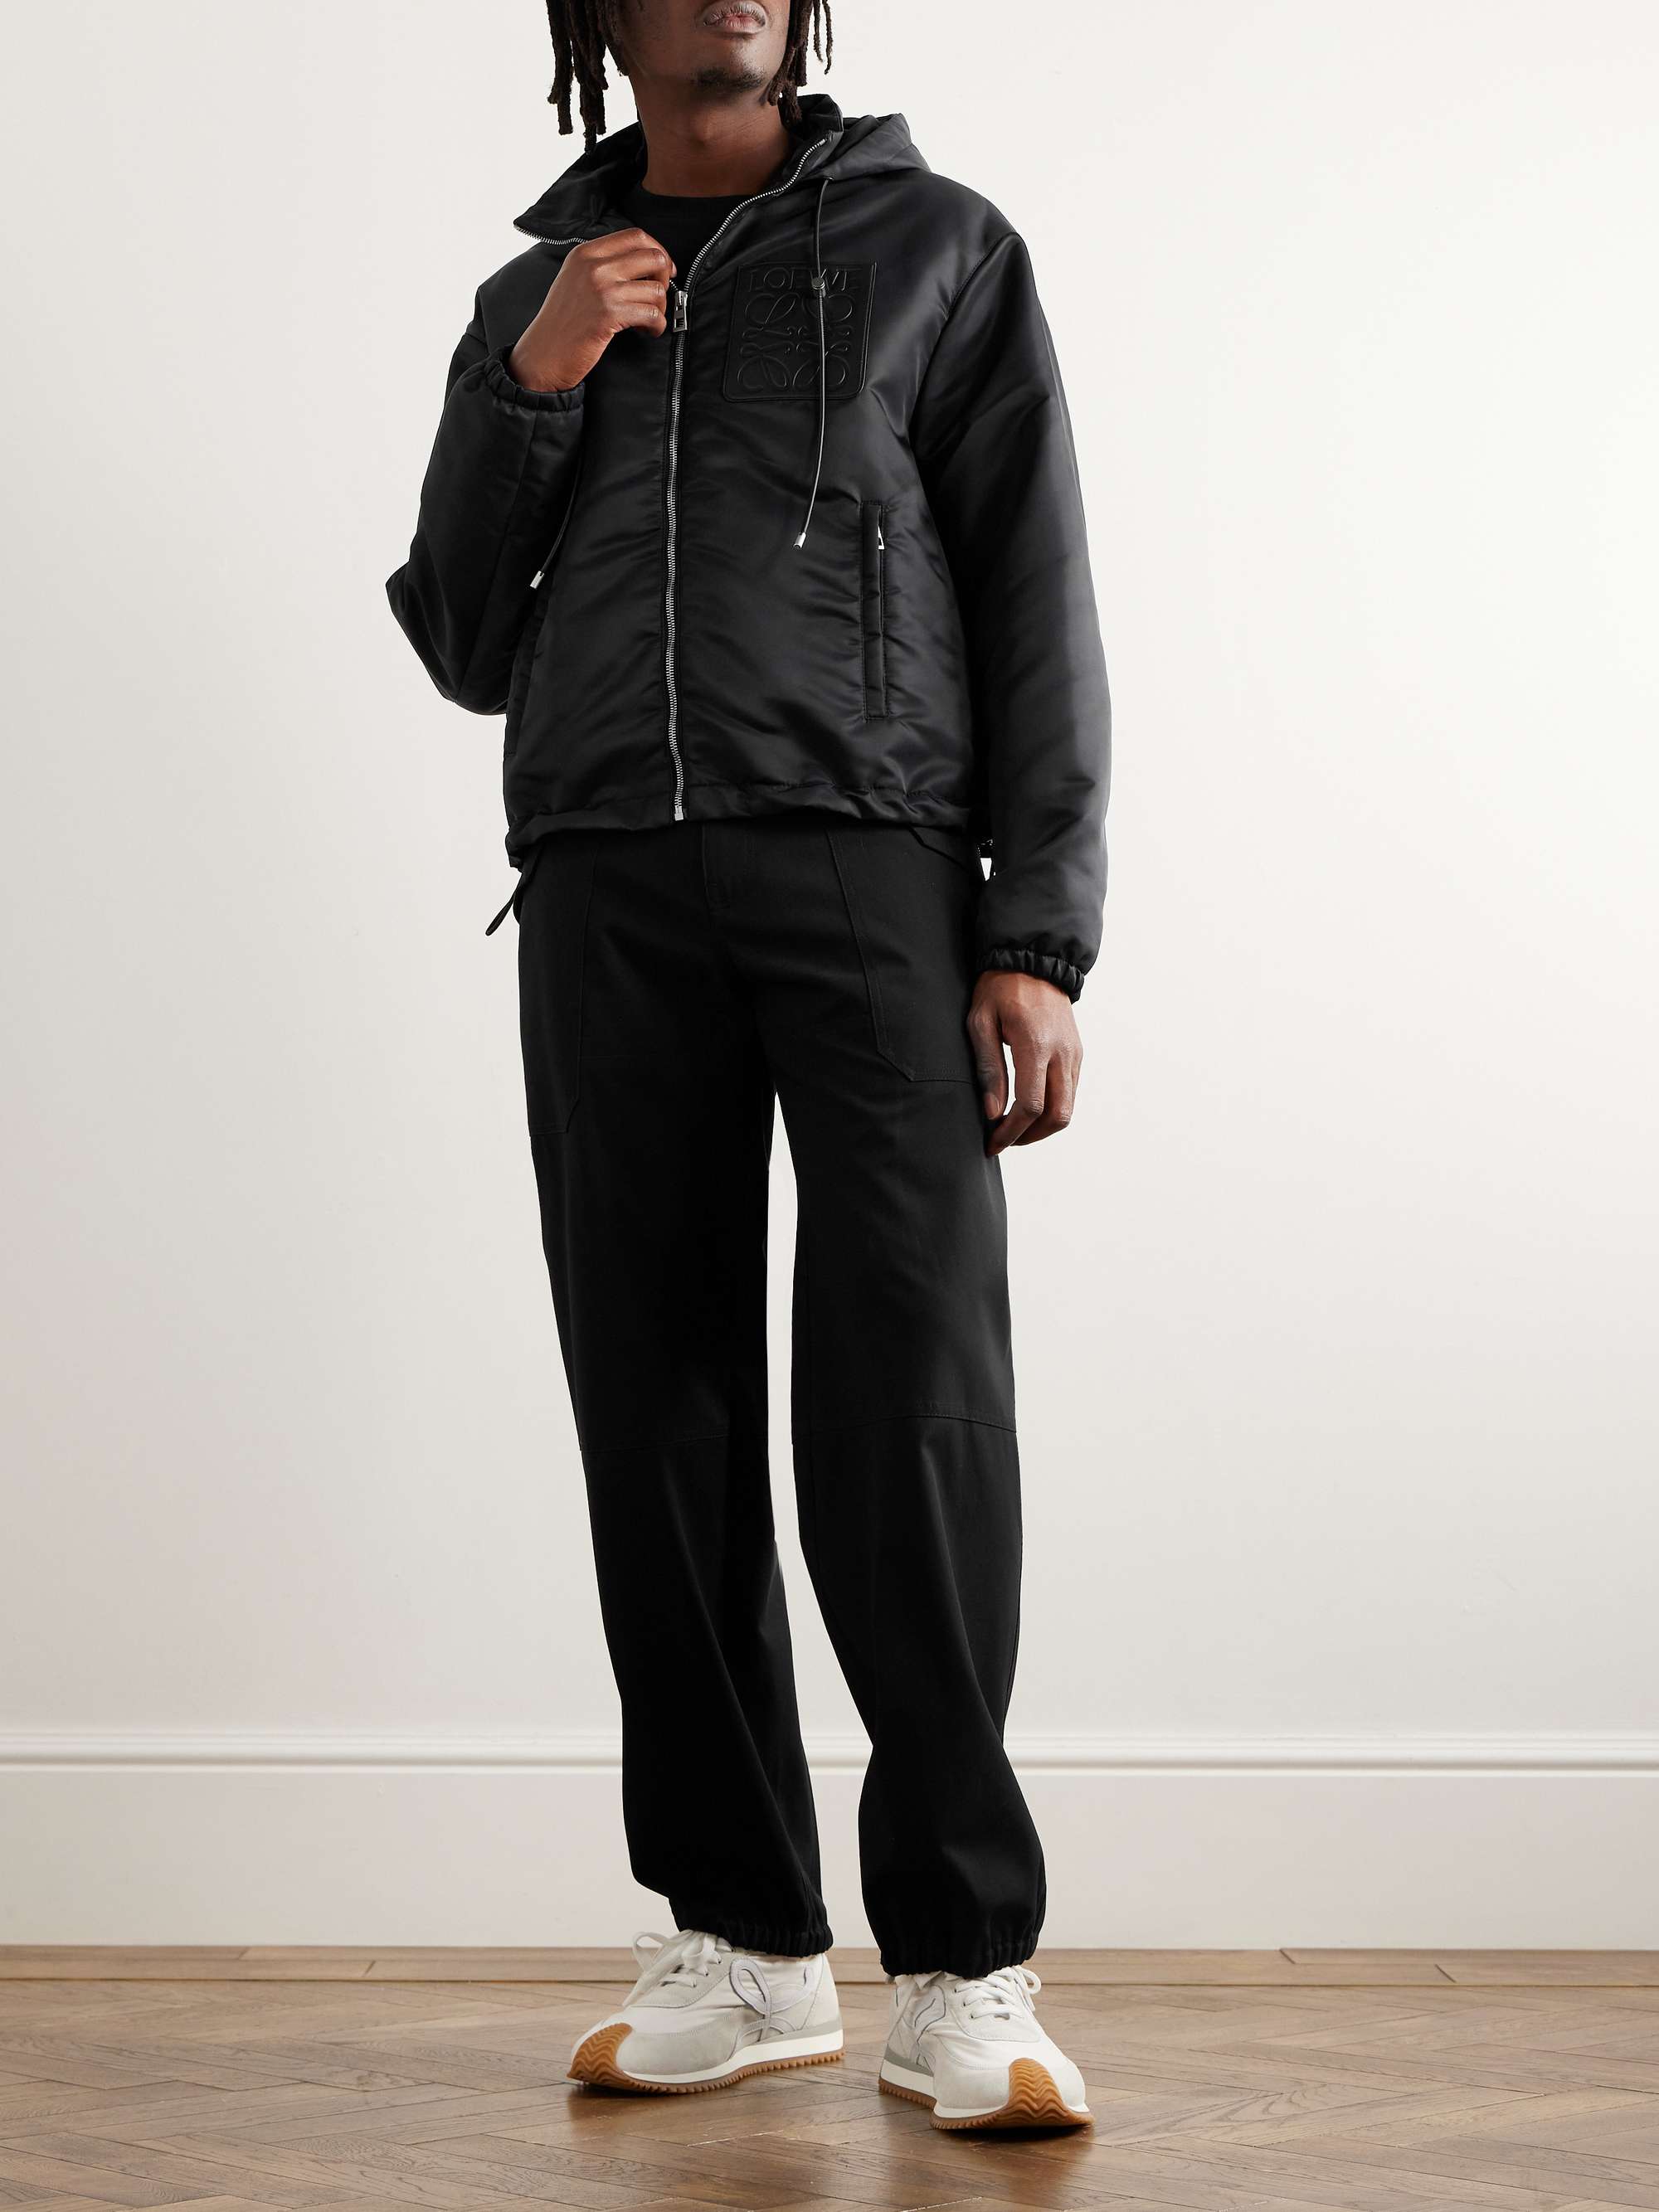 LOEWE Leather-Trimmed Shell Hooded Jacket for Men | MR PORTER